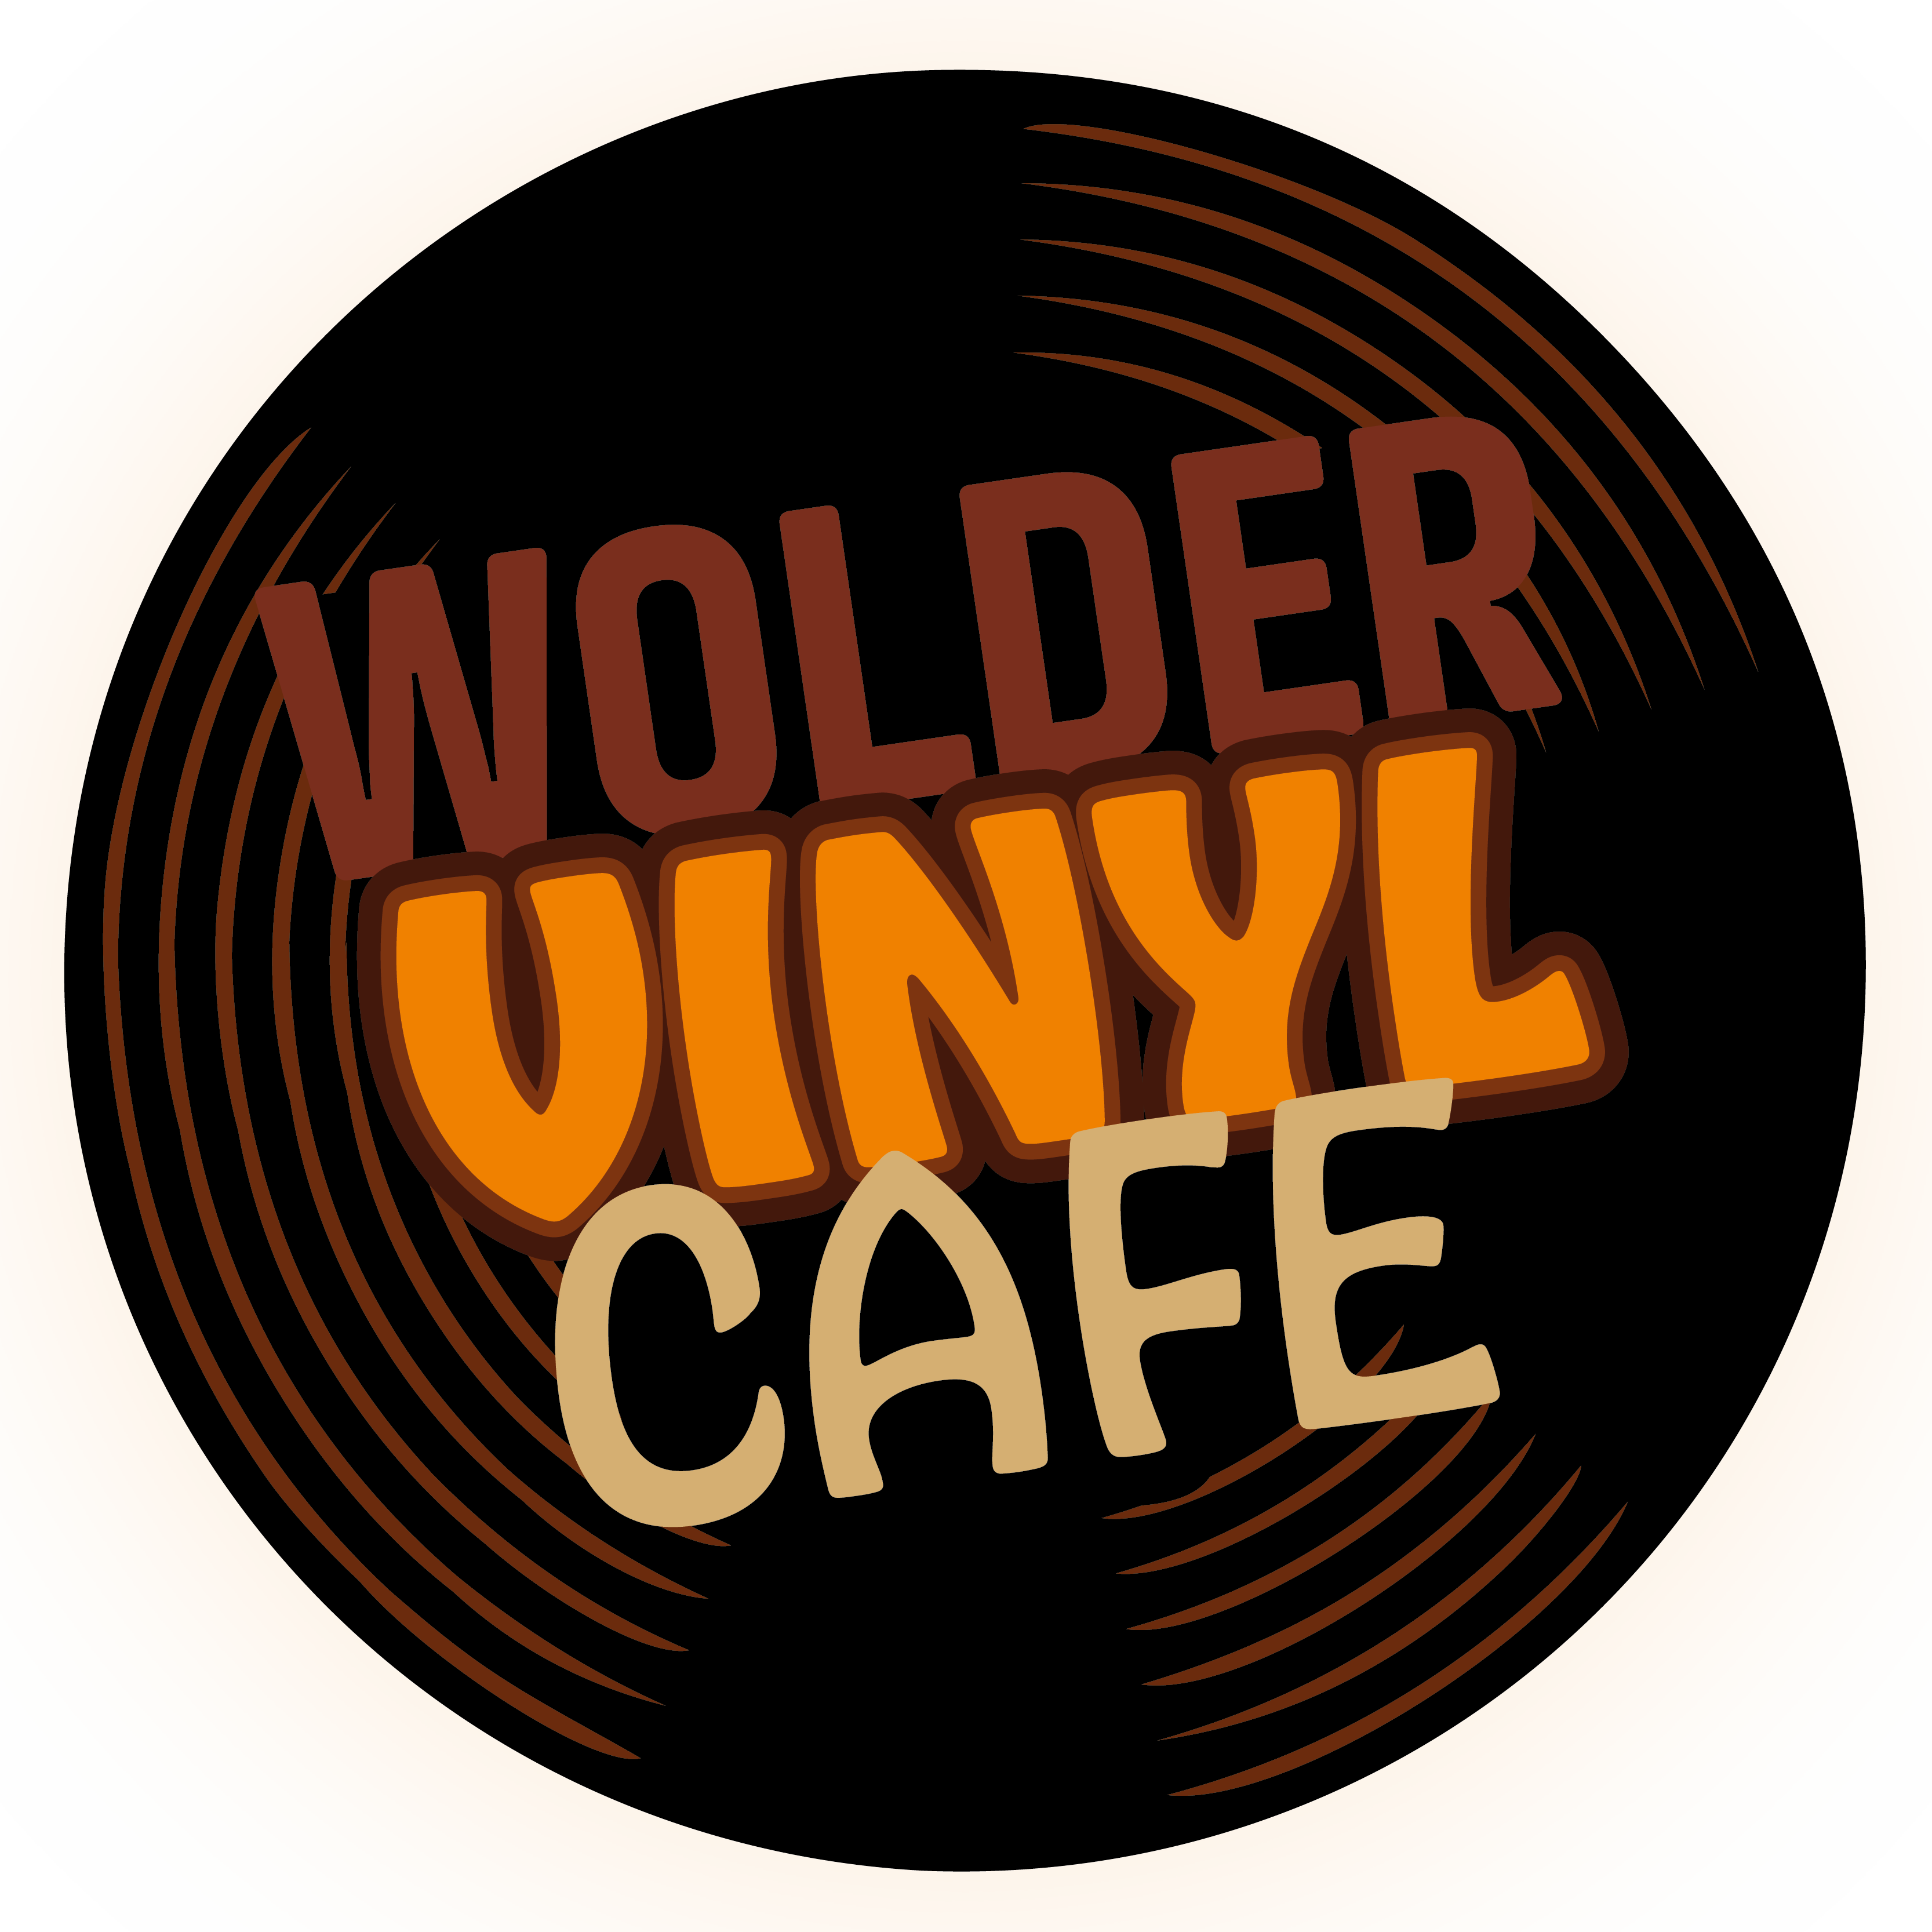 Wolder Vinyl Café